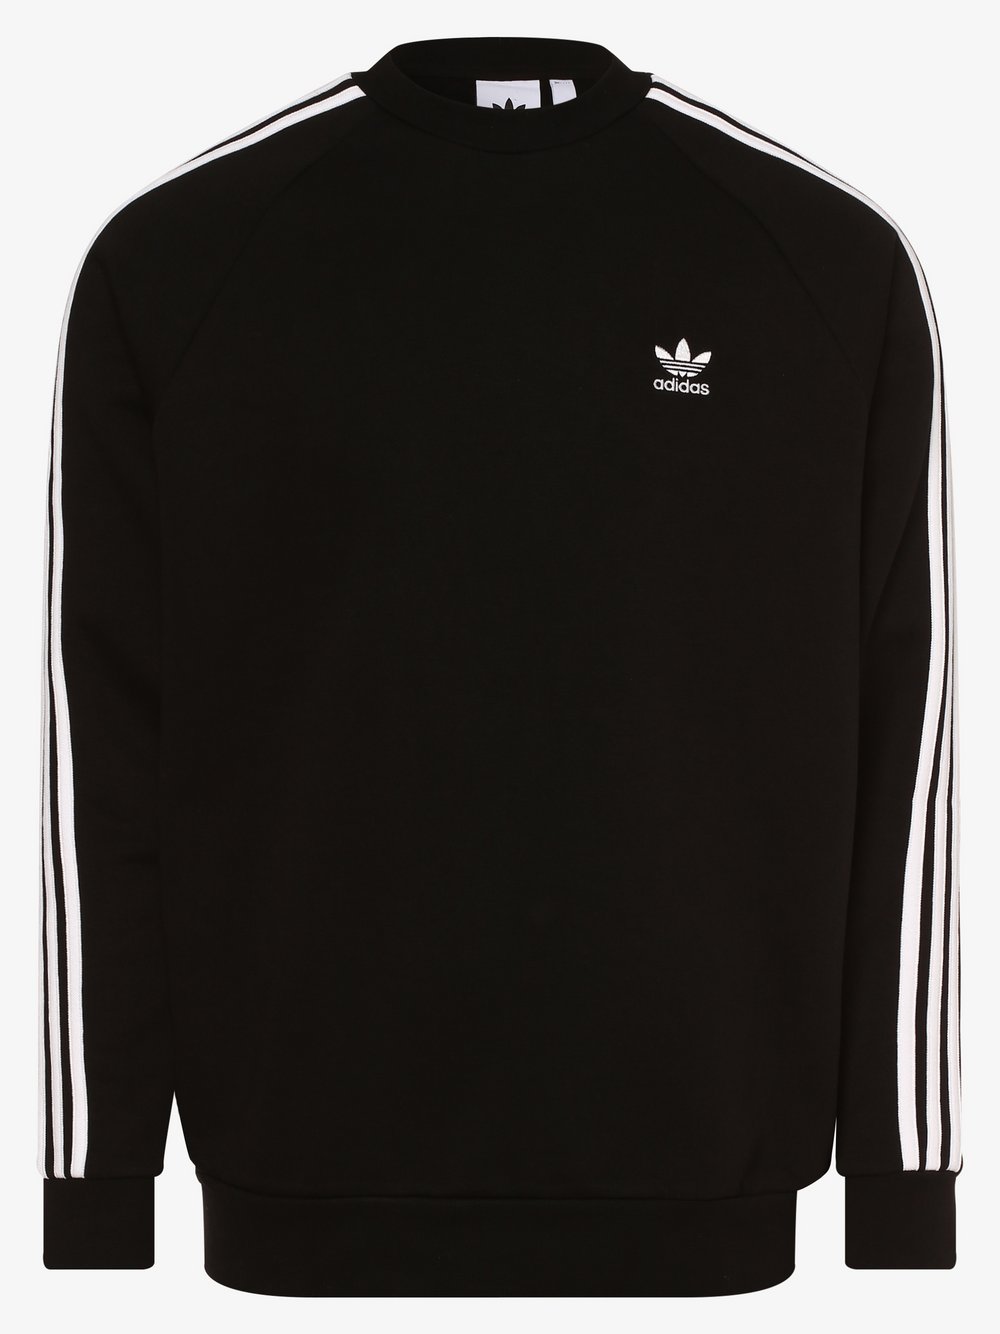 Adidas Originals - Męska bluza nierozpinana, czarny